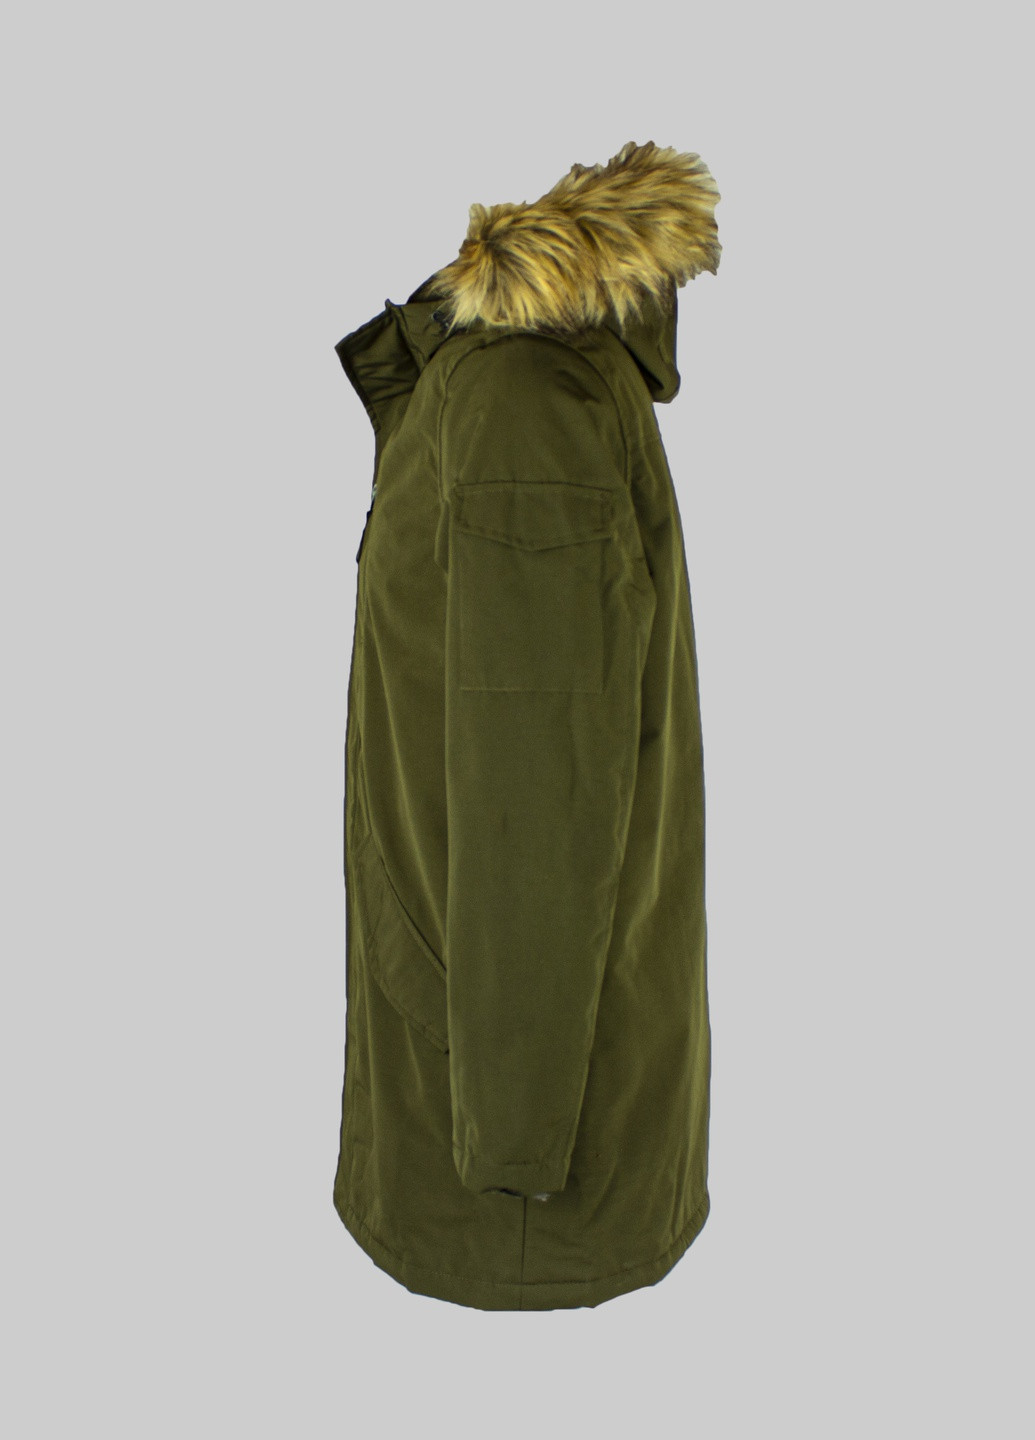 Оливковая (хаки) демисезонная куртка Primark